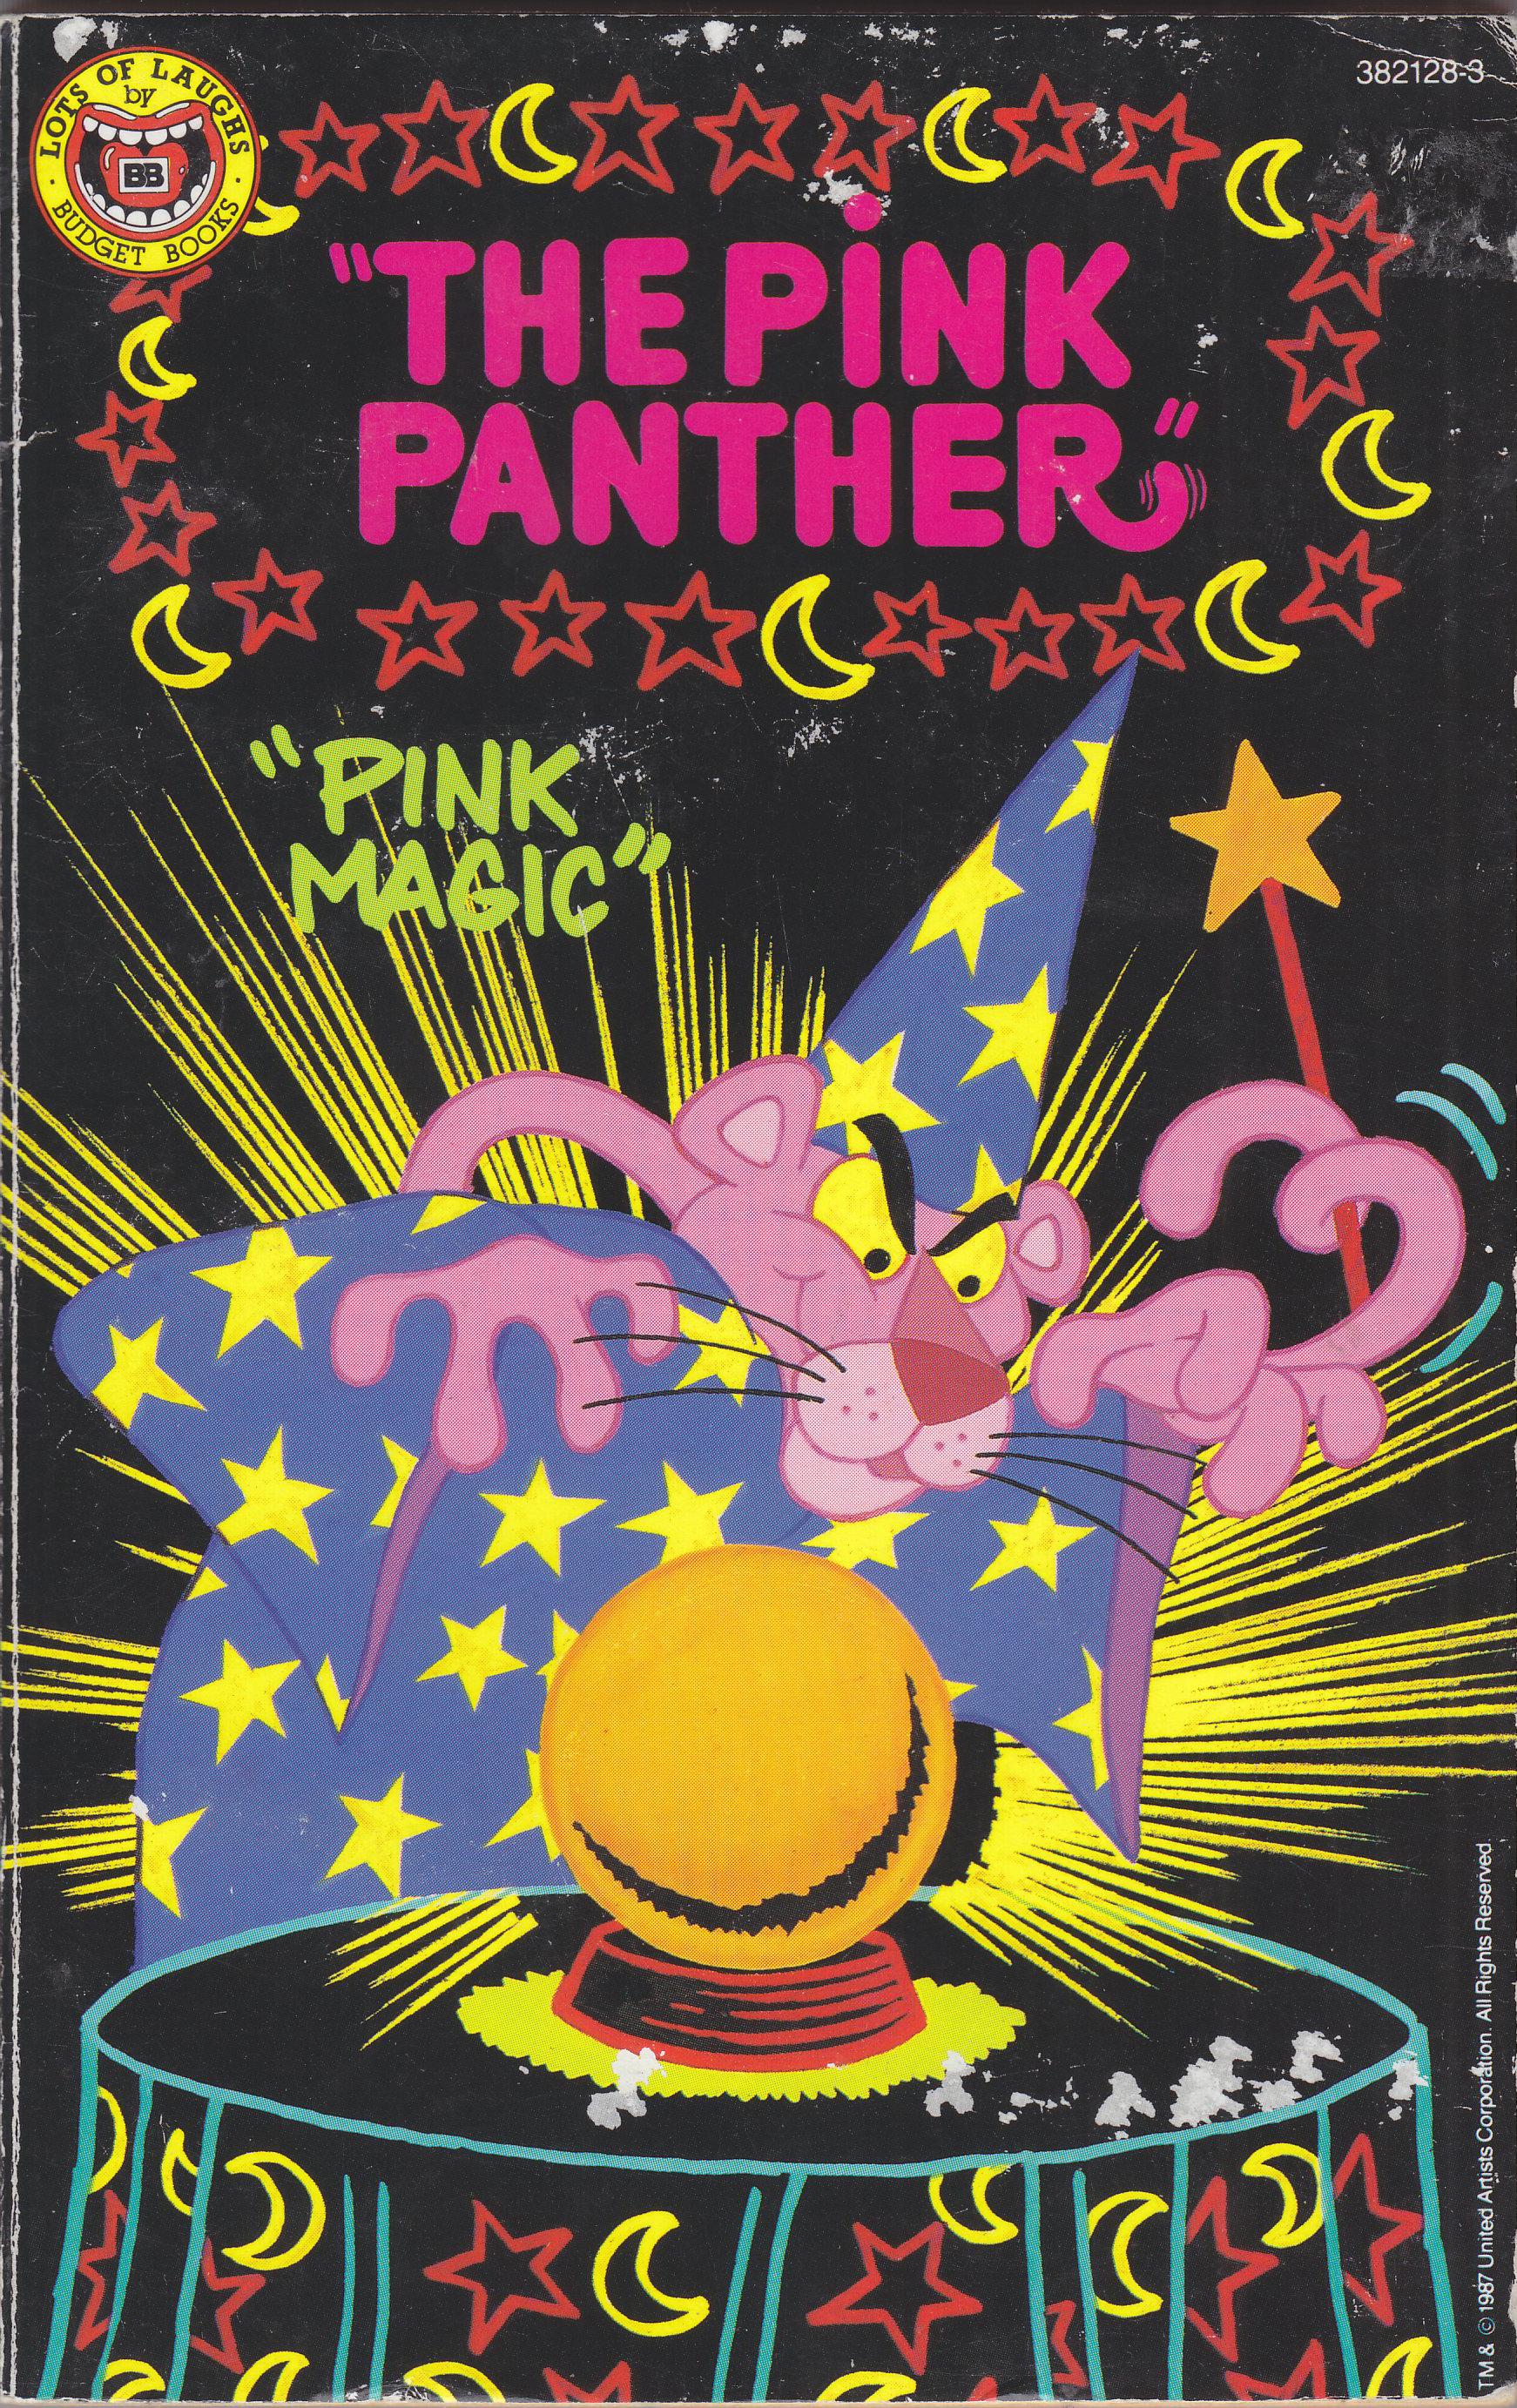 pink panther pinkadelic pursuit is a platformer